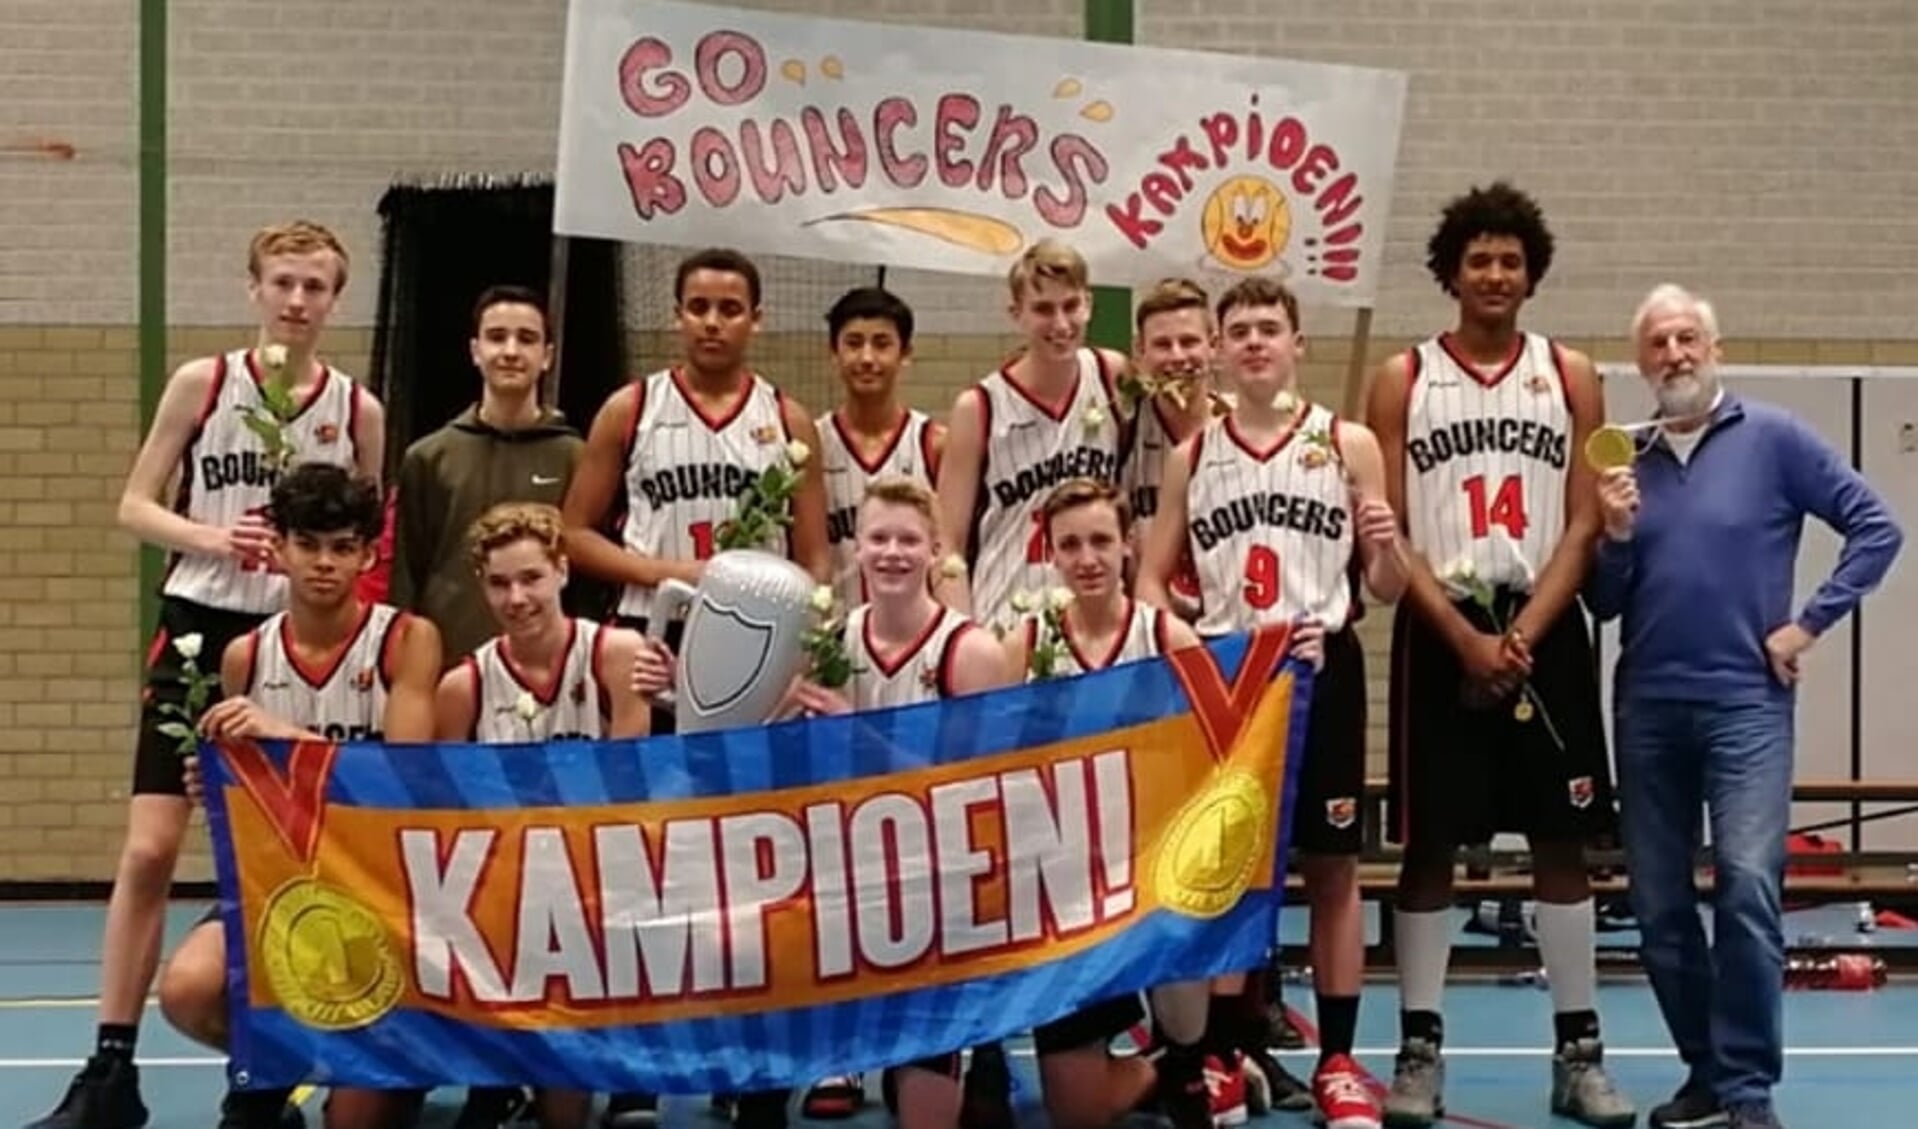 De jongensploeg tot zestien jaar werd zaterdag in Groningen kampioen. (foto: pr)